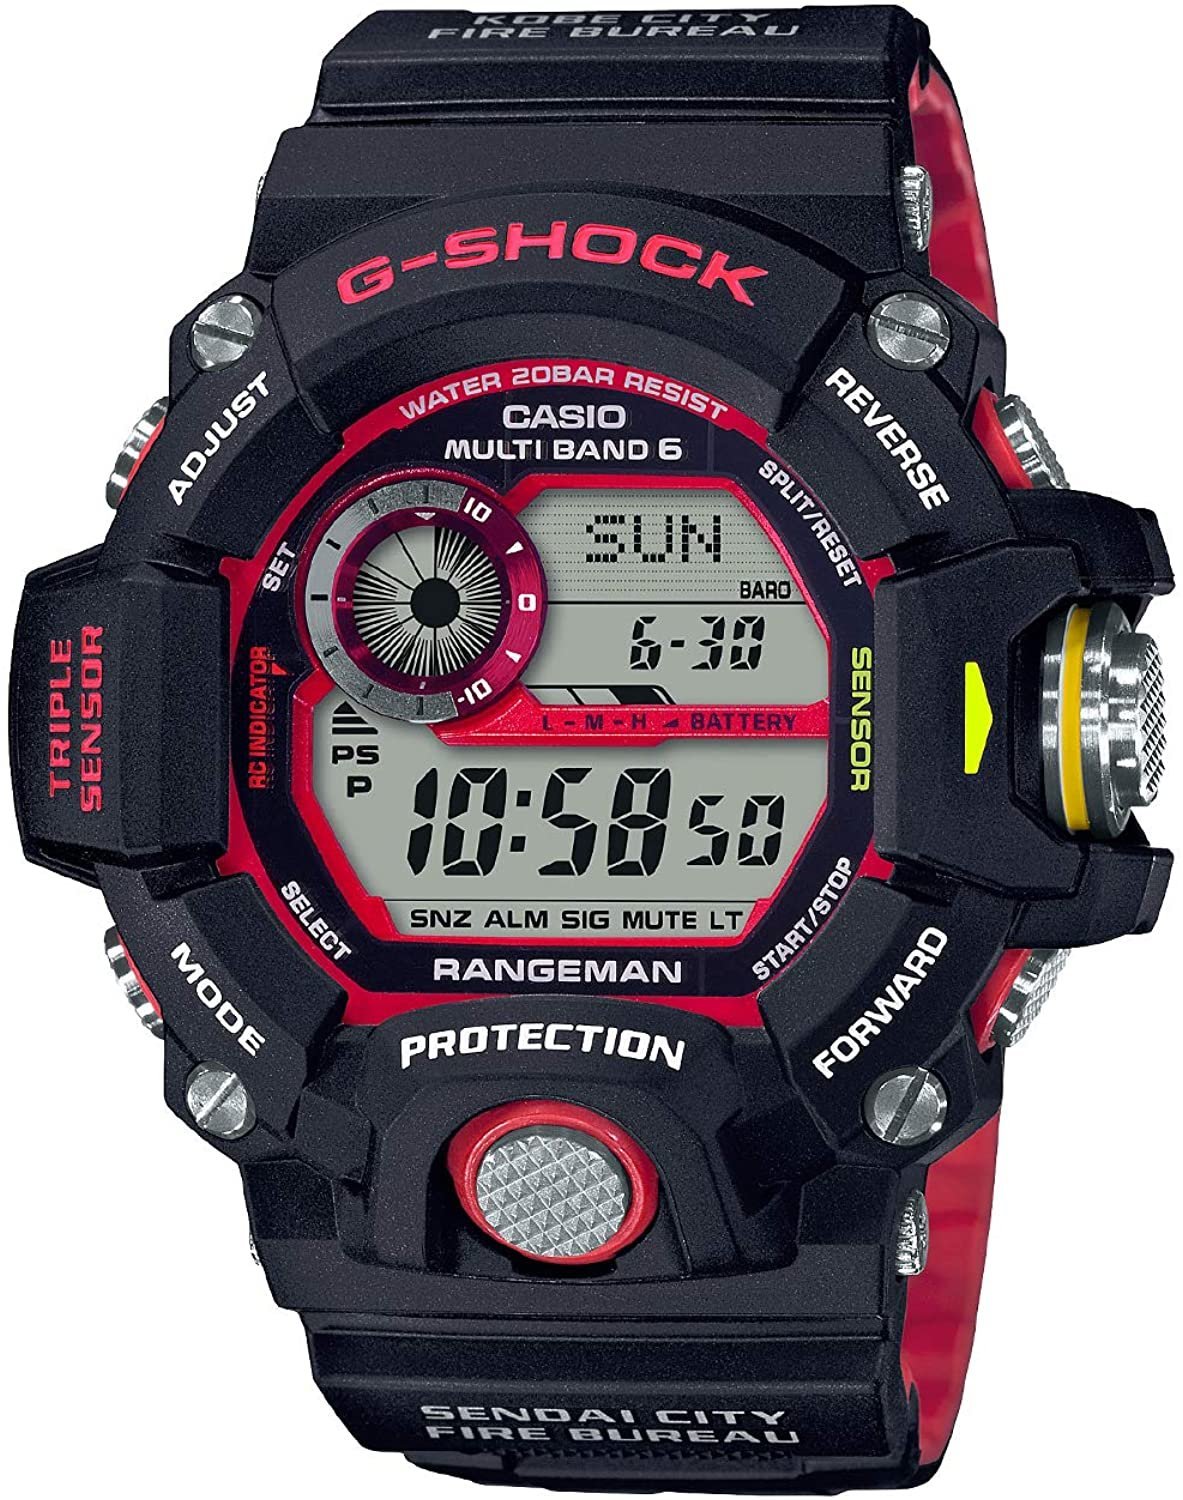 日本正版CASIO 卡西歐G-Shock GW-9400NFST-1AJR 緊急消防援助隊電波錶 